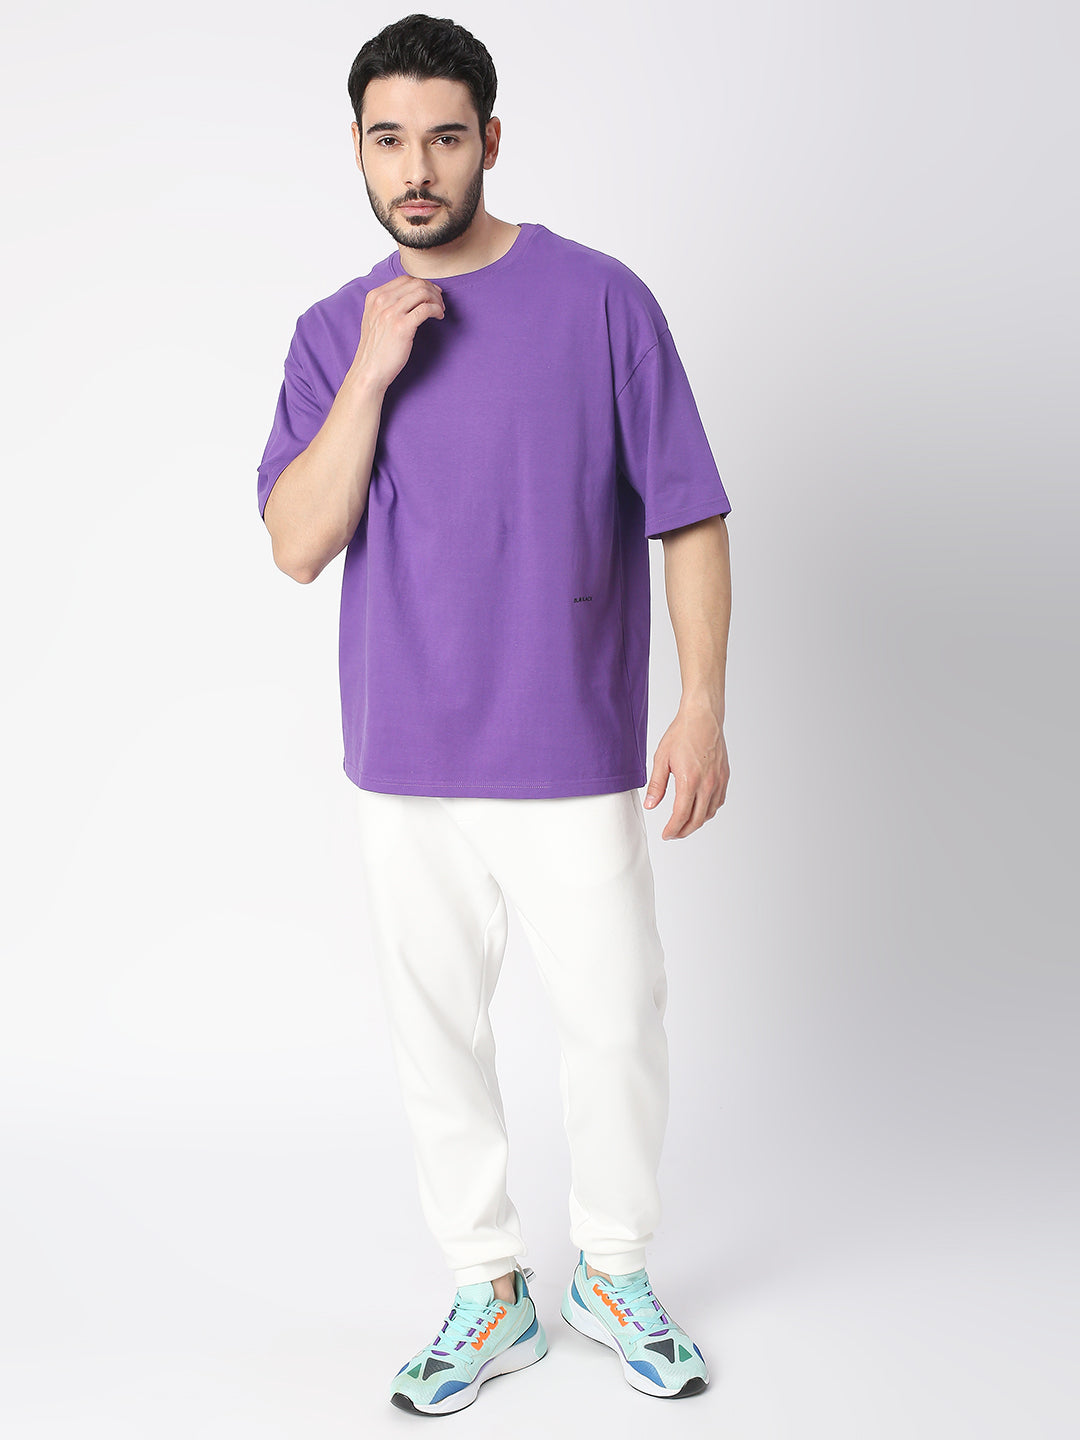 Buy Blamblack Solid Purple Half Sleeved T-shirt